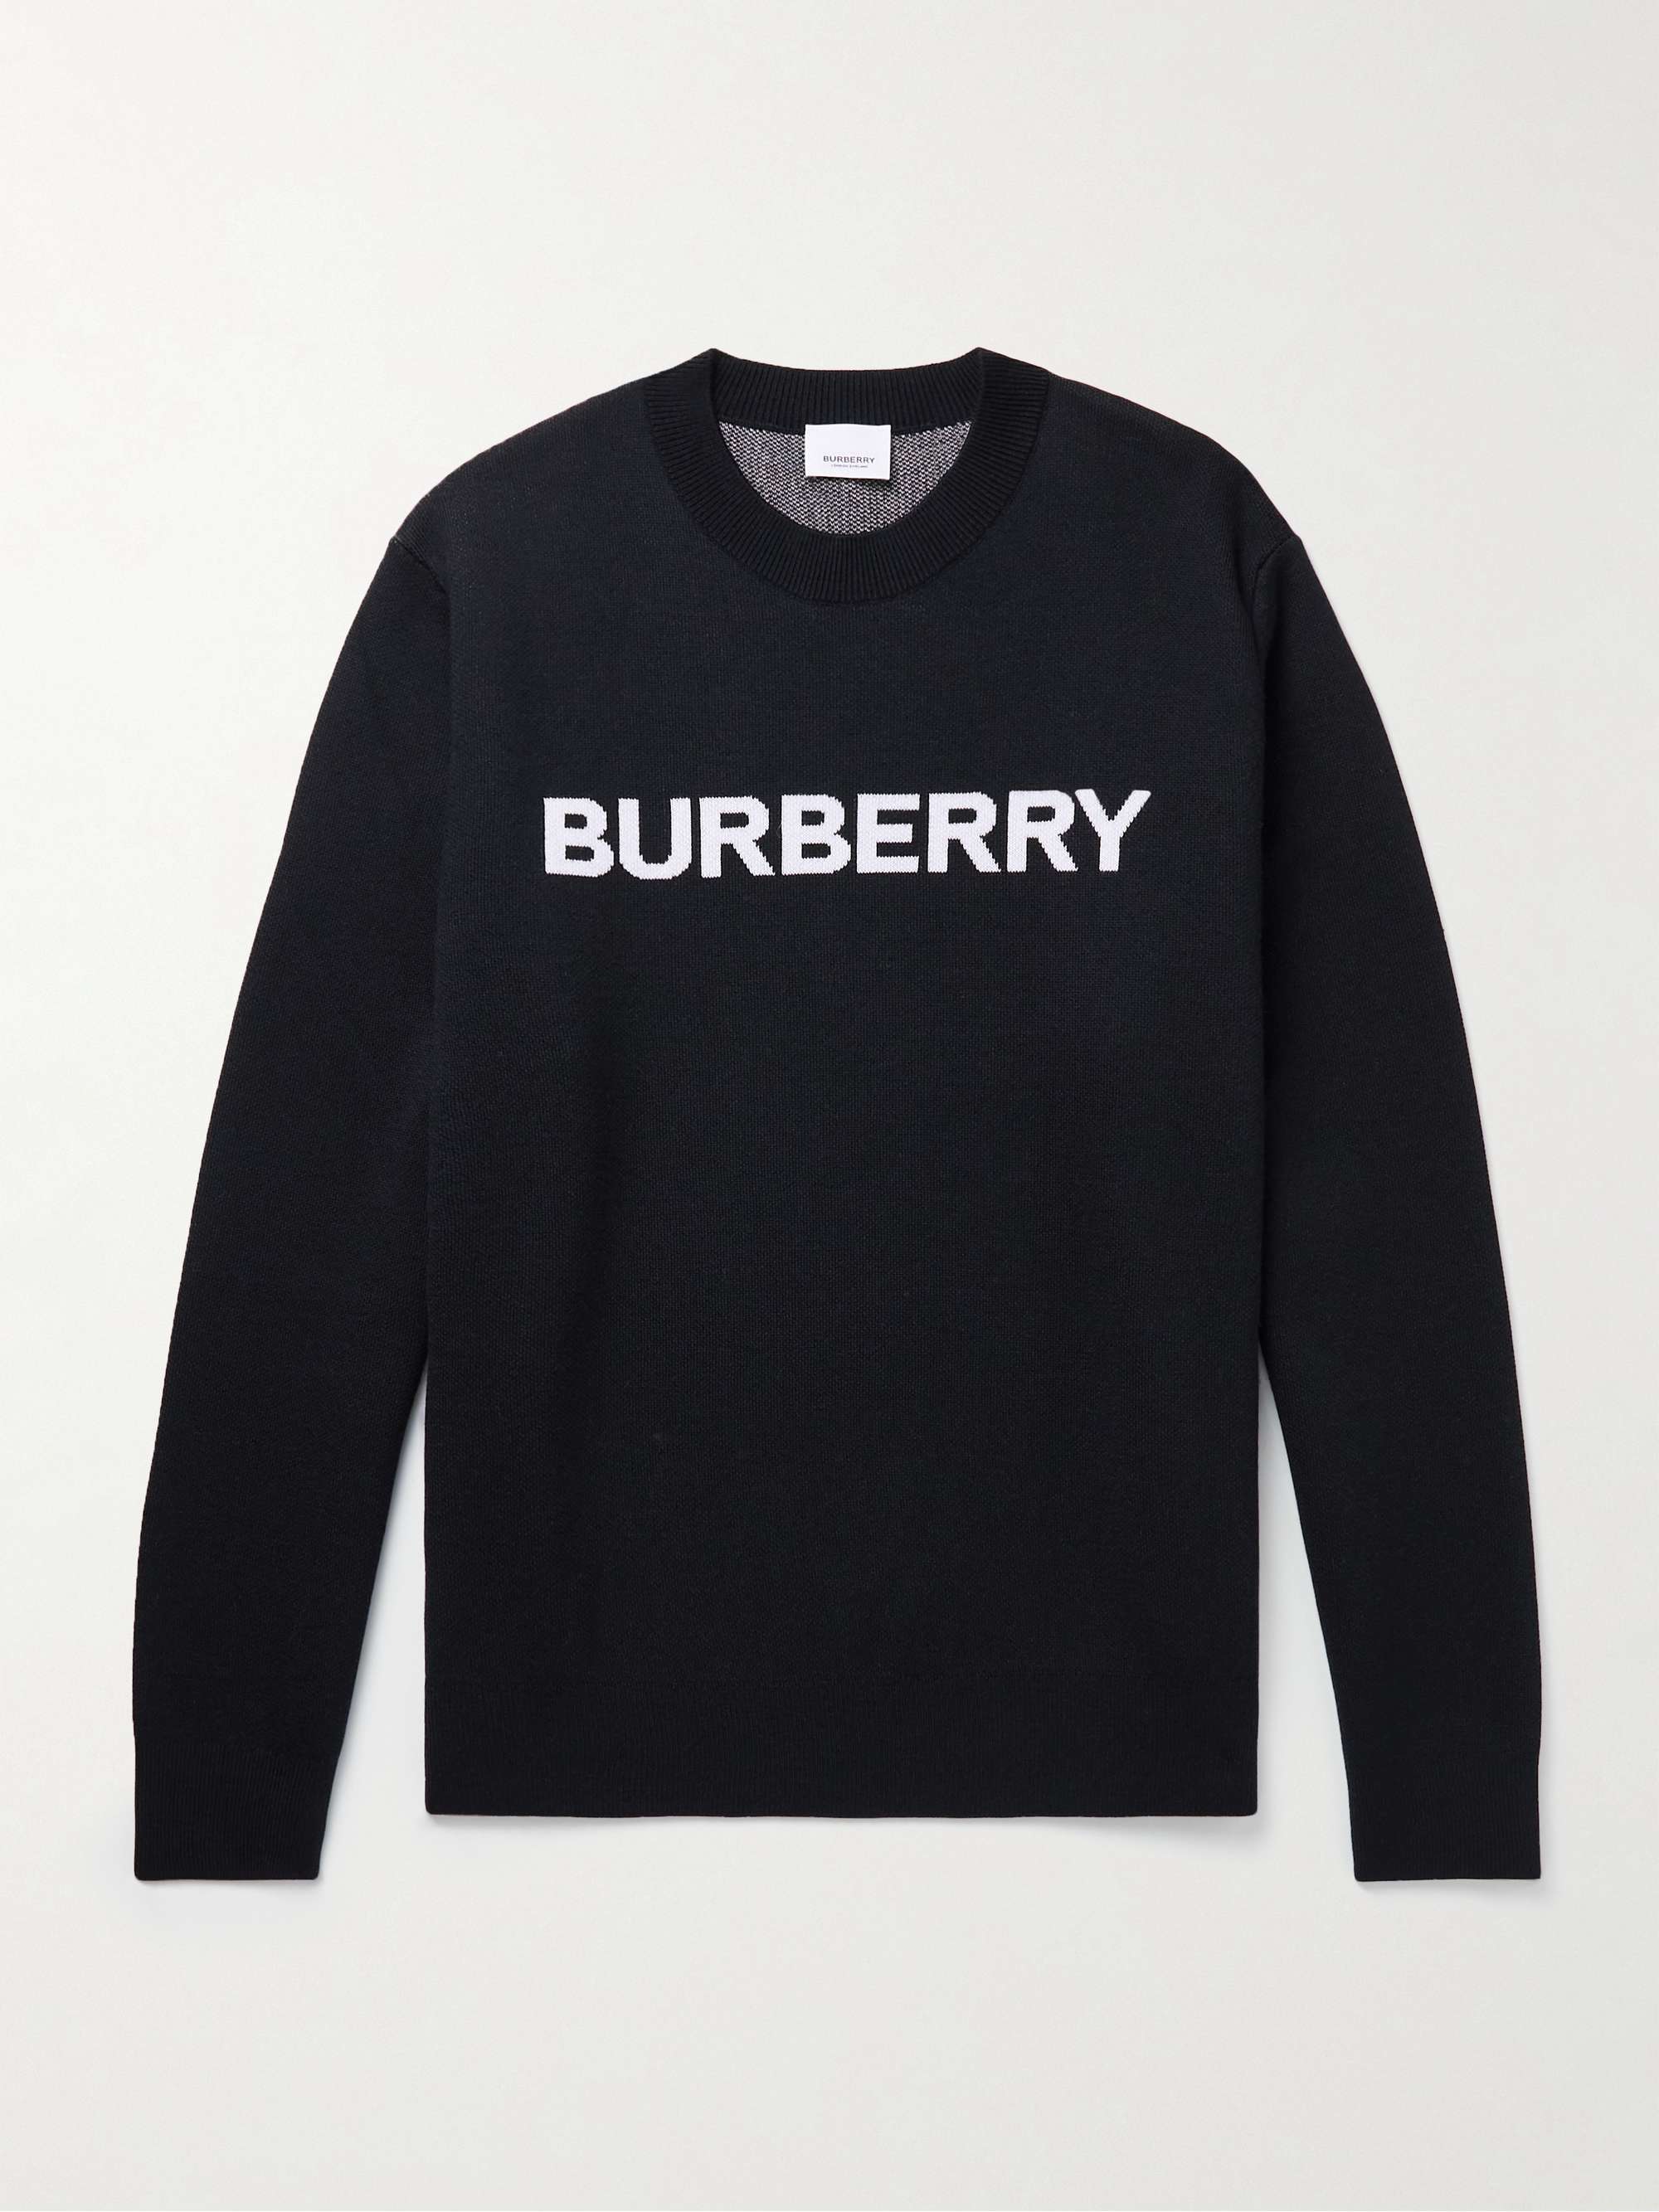 Top 48+ imagen burberry sweater - Abzlocal.mx